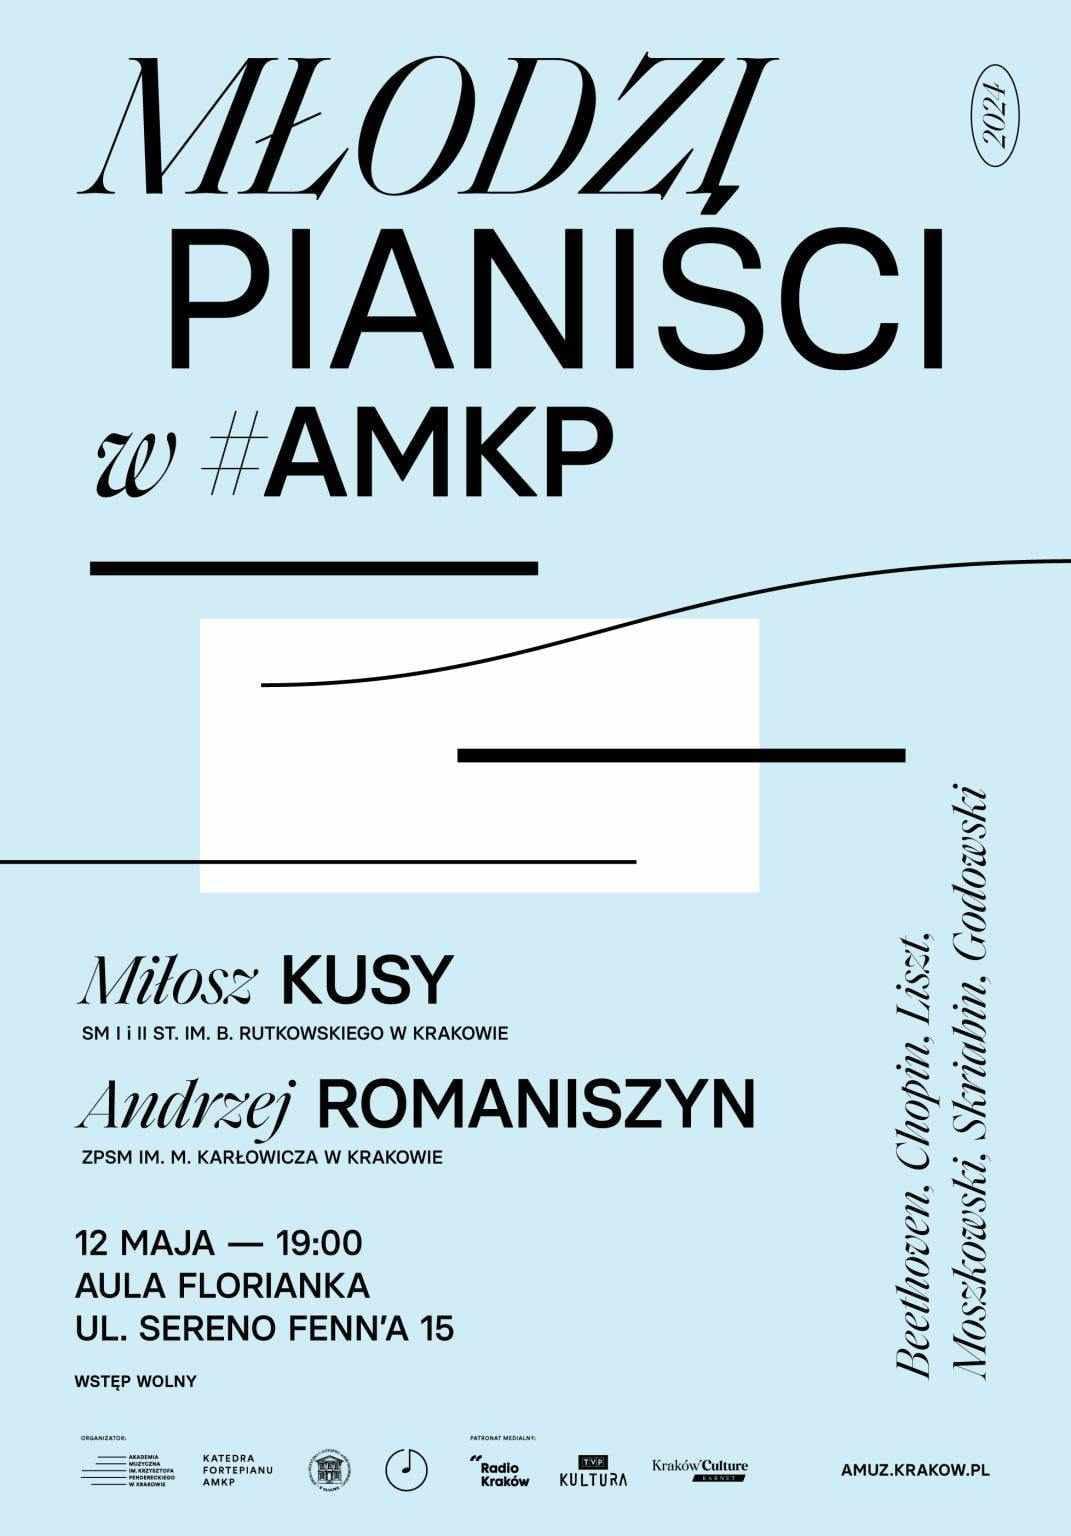 Koncert Młodzi pianiści w AMKP